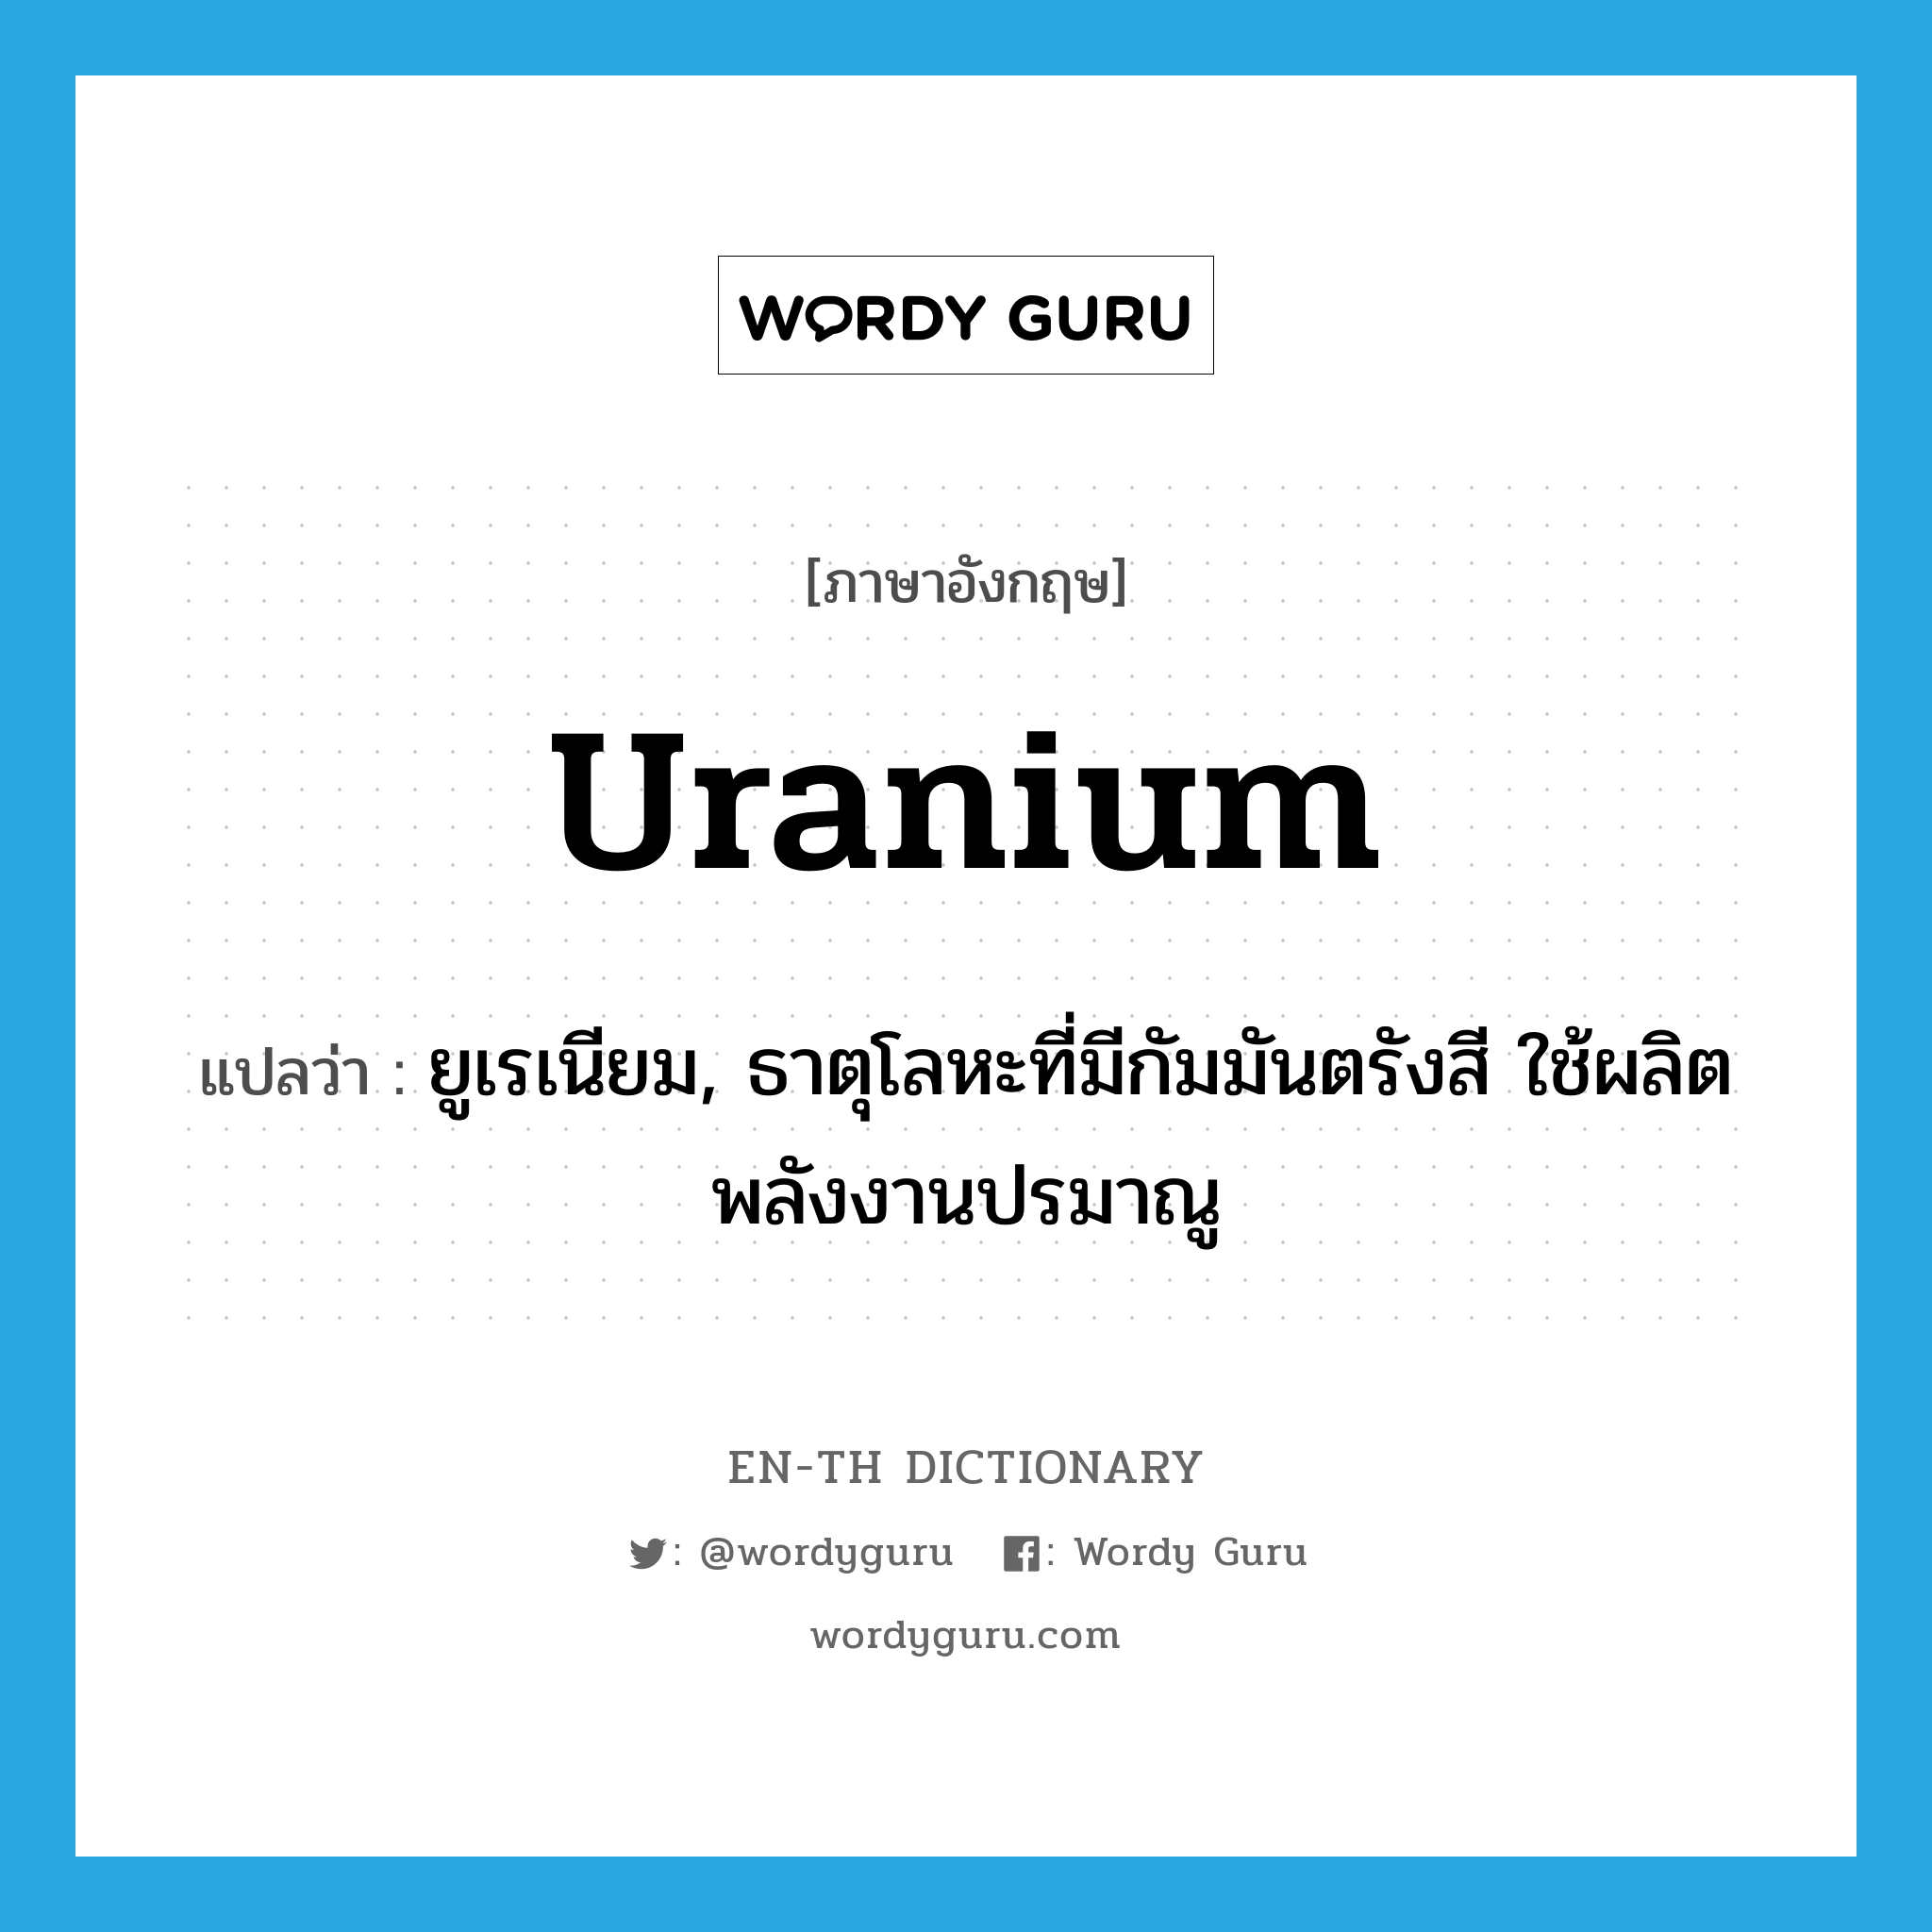 ยูเรเนียม, ธาตุโลหะที่มีกัมมันตรังสี ใช้ผลิตพลังงานปรมาณู ภาษาอังกฤษ?, คำศัพท์ภาษาอังกฤษ ยูเรเนียม, ธาตุโลหะที่มีกัมมันตรังสี ใช้ผลิตพลังงานปรมาณู แปลว่า uranium ประเภท N หมวด N